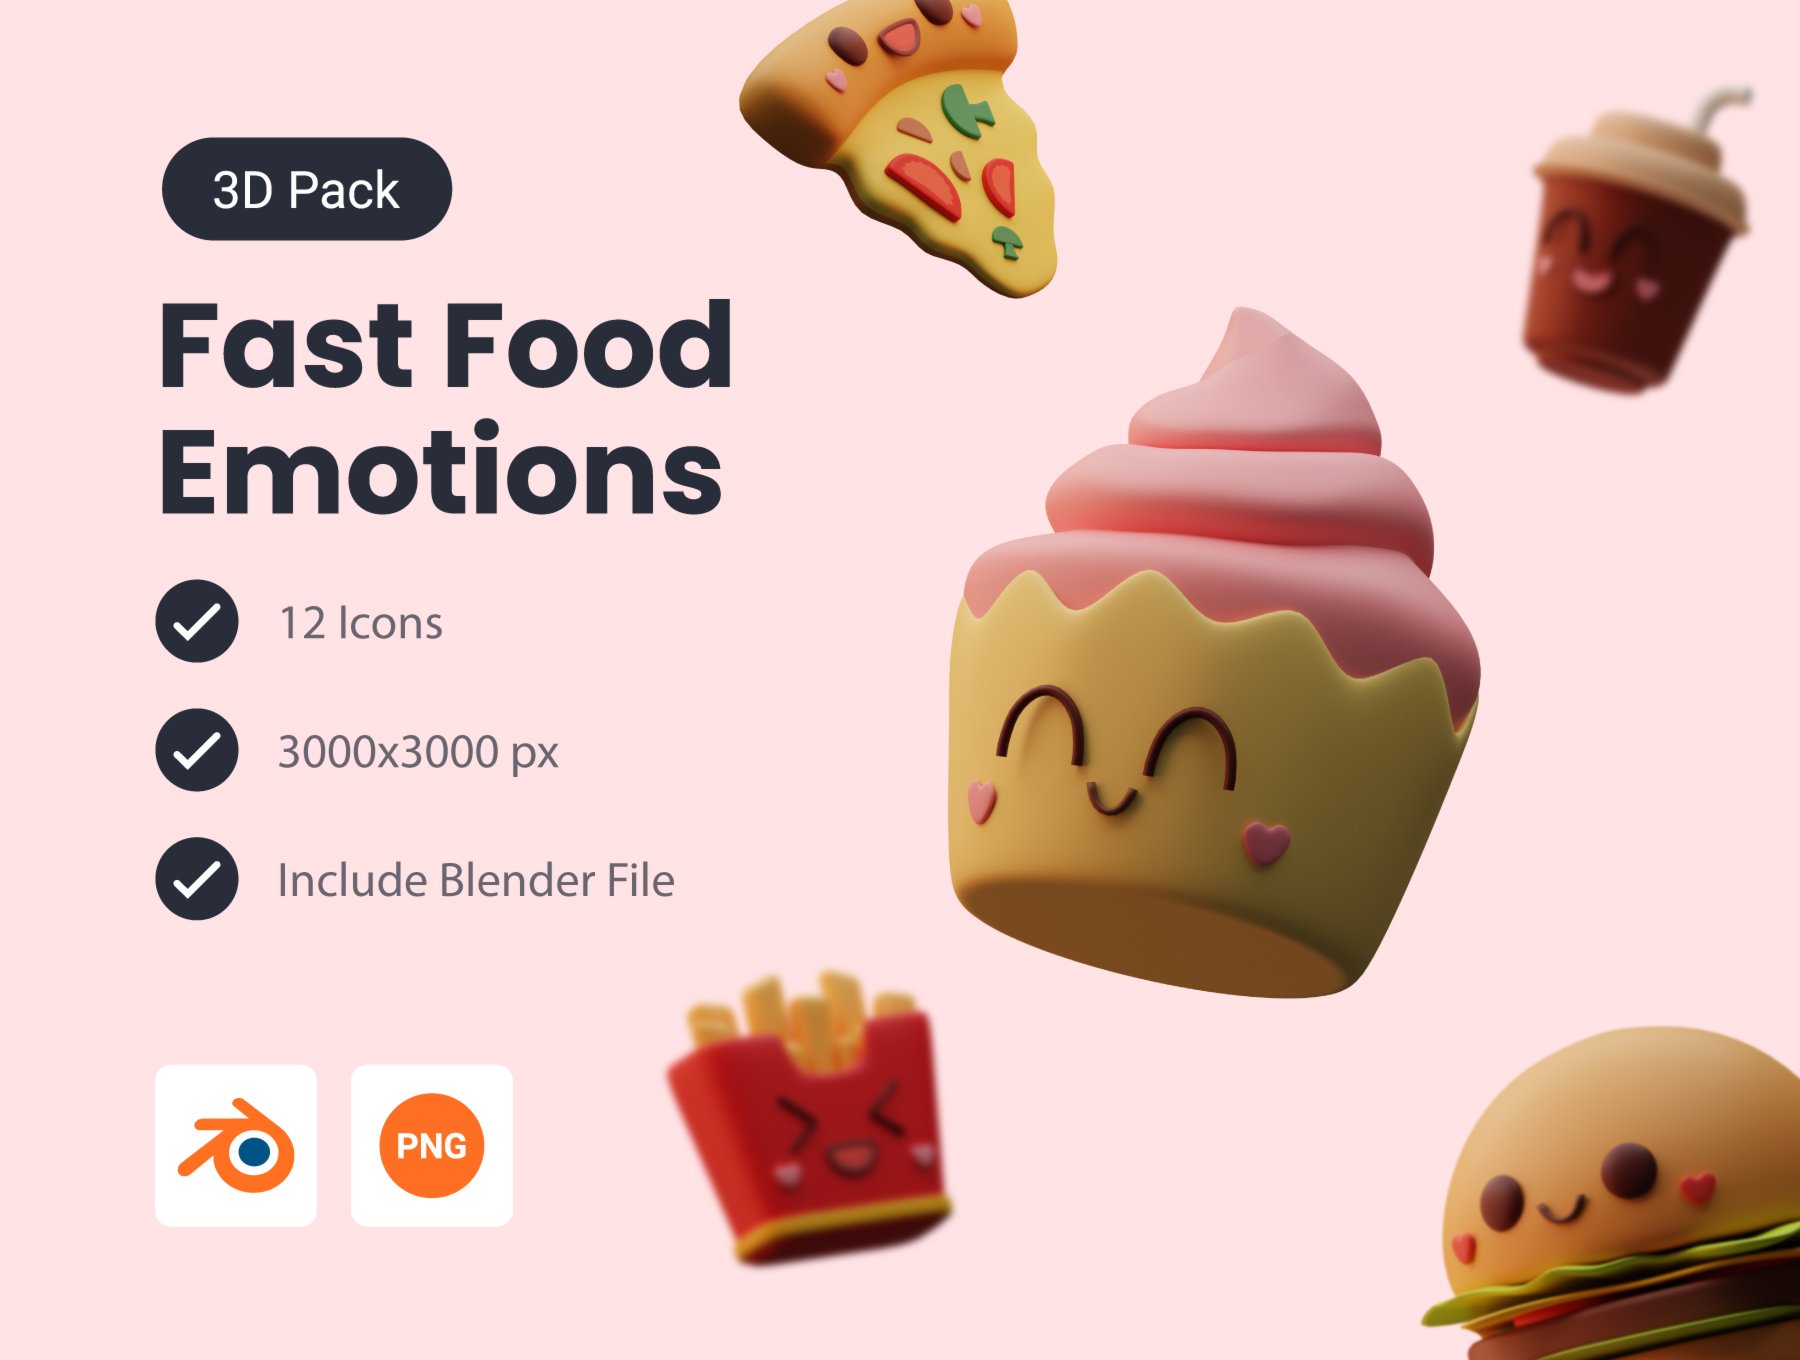 诱人的美食快餐饮料3D图标icon .blend .png素材